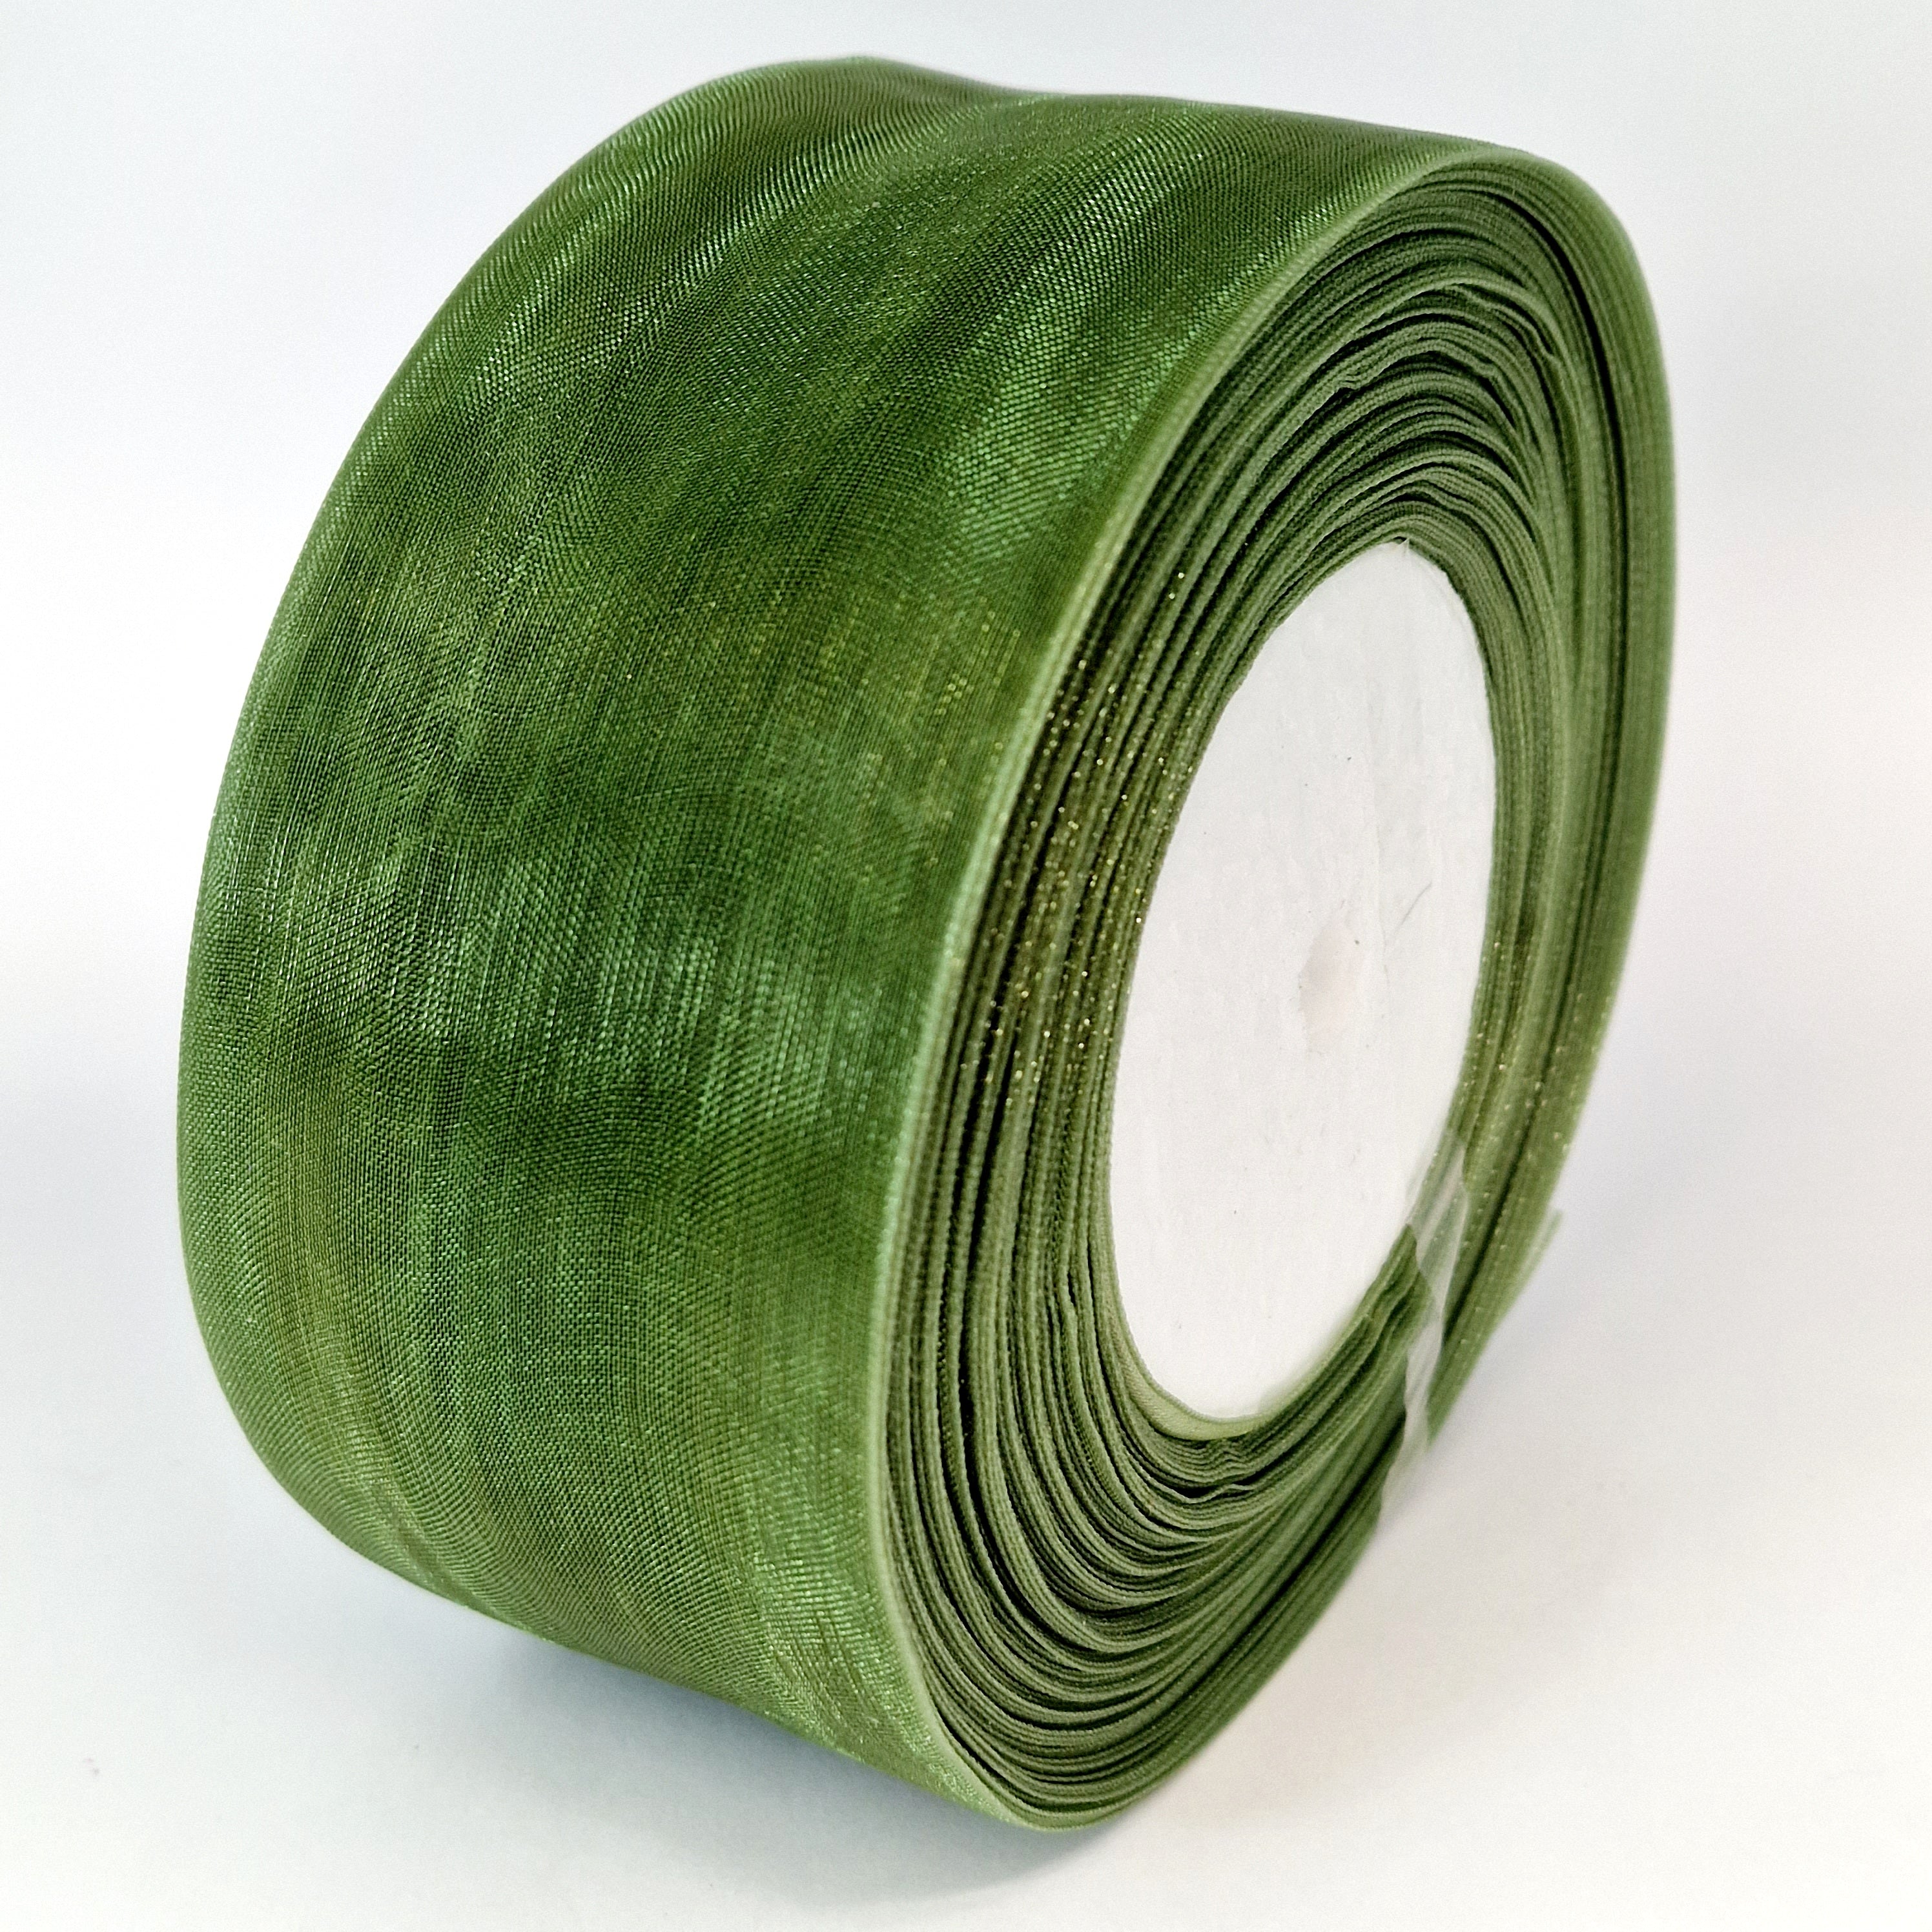 MajorCrafts 50mm 45metres Sheer Organza Fabric Ribbon Roll Green Shade R1061